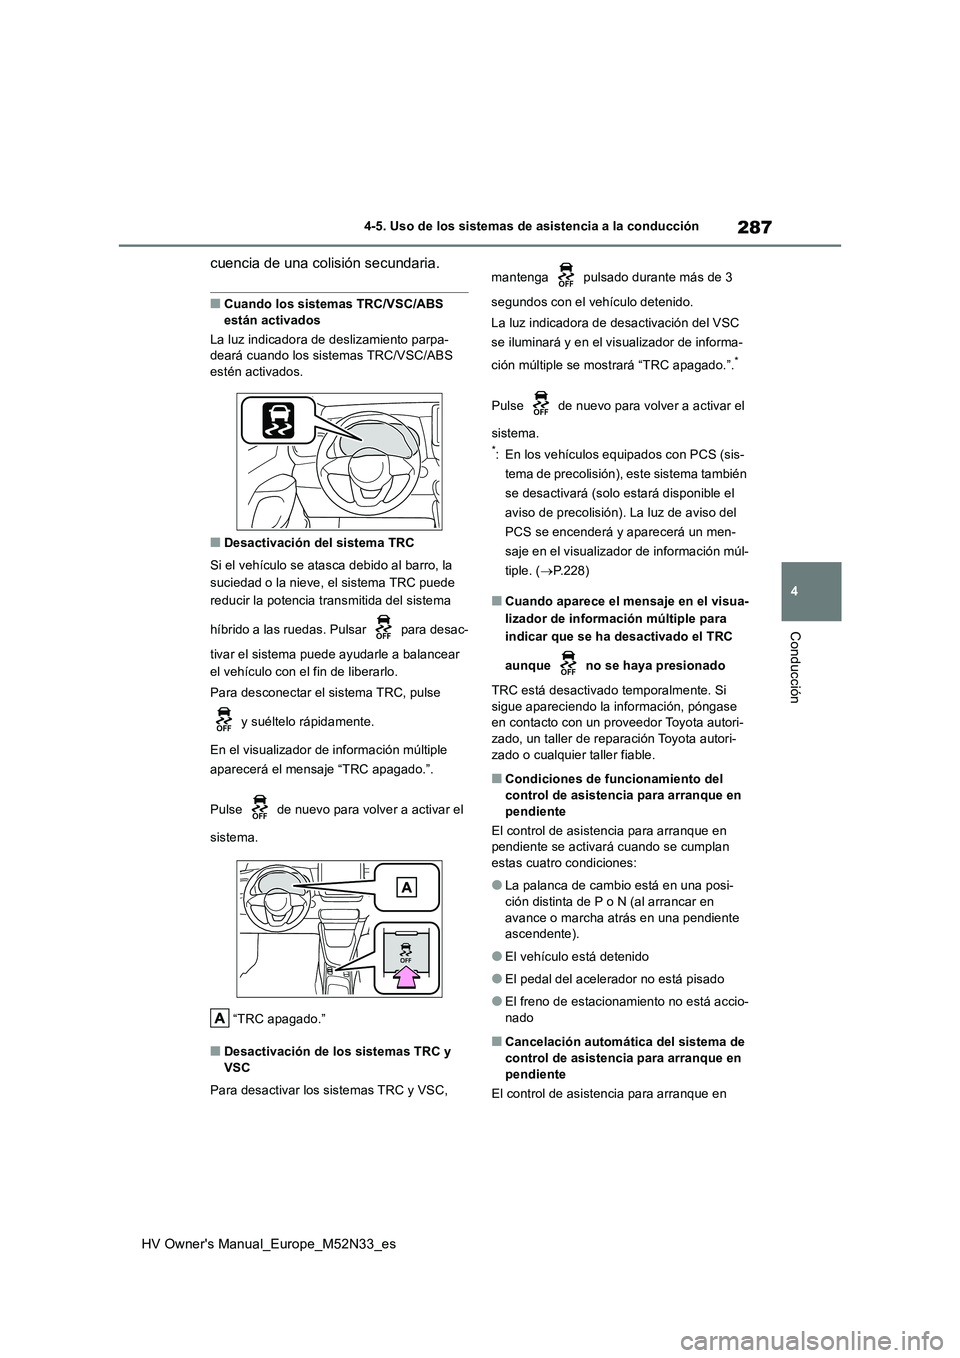 TOYOTA YARIS 2022  Manuale de Empleo (in Spanish) 287
4
HV Owner's Manual_Europe_M52N33_es
4-5. Uso de los sistemas de asistencia a la conducción
Conducción
cuencia de una colisión secundaria.
■Cuando los sistemas TRC/VSC/ABS  
están activa